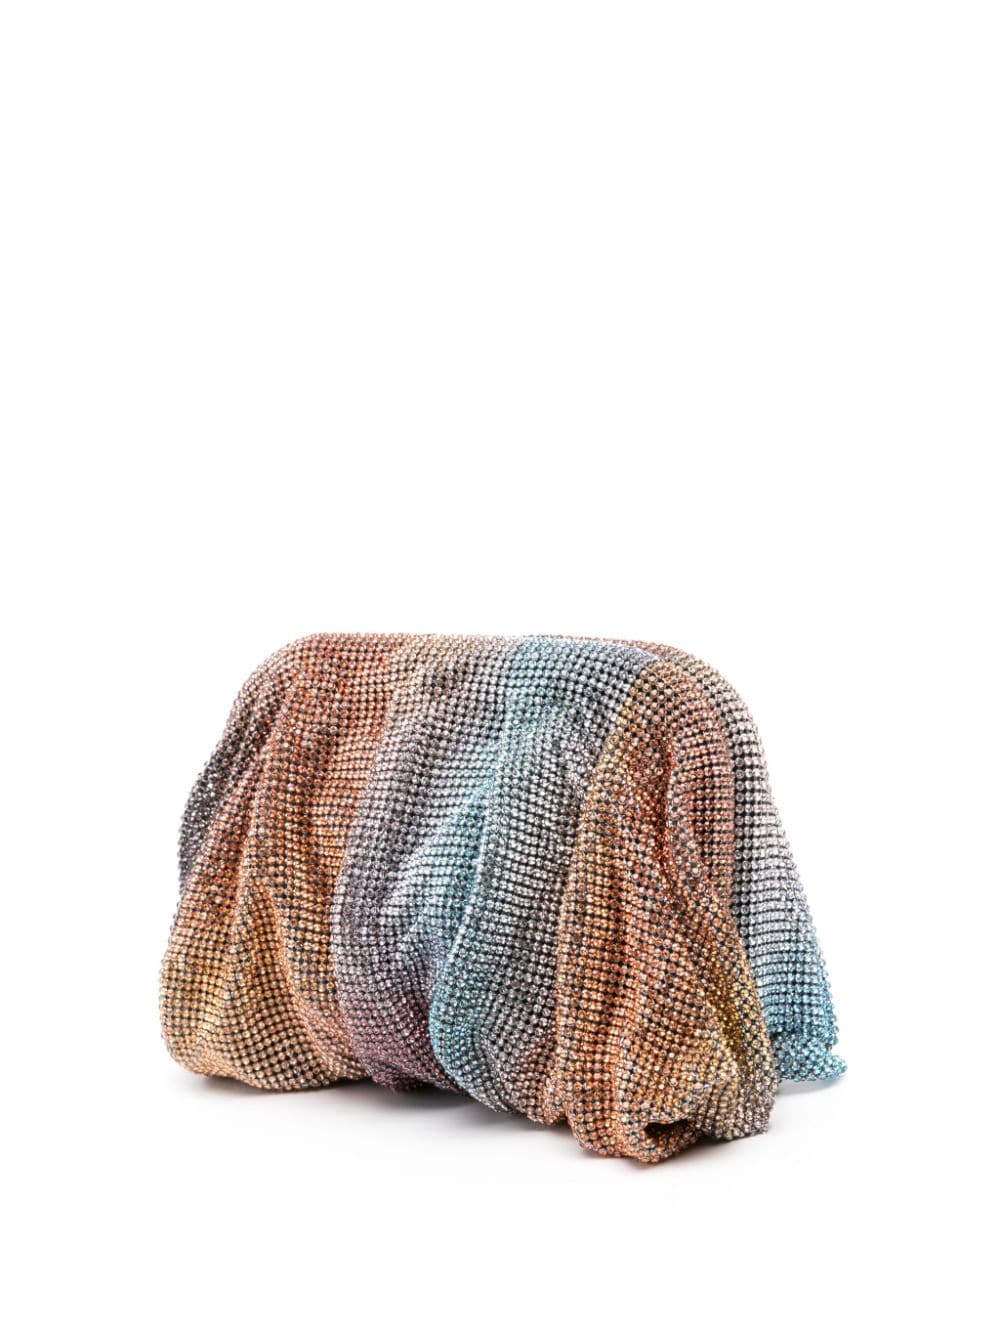 Benedetta Bruzziches BENEDETTA BRUZZICHES- Venus La Petite Crystal-embellished Clutch Bag